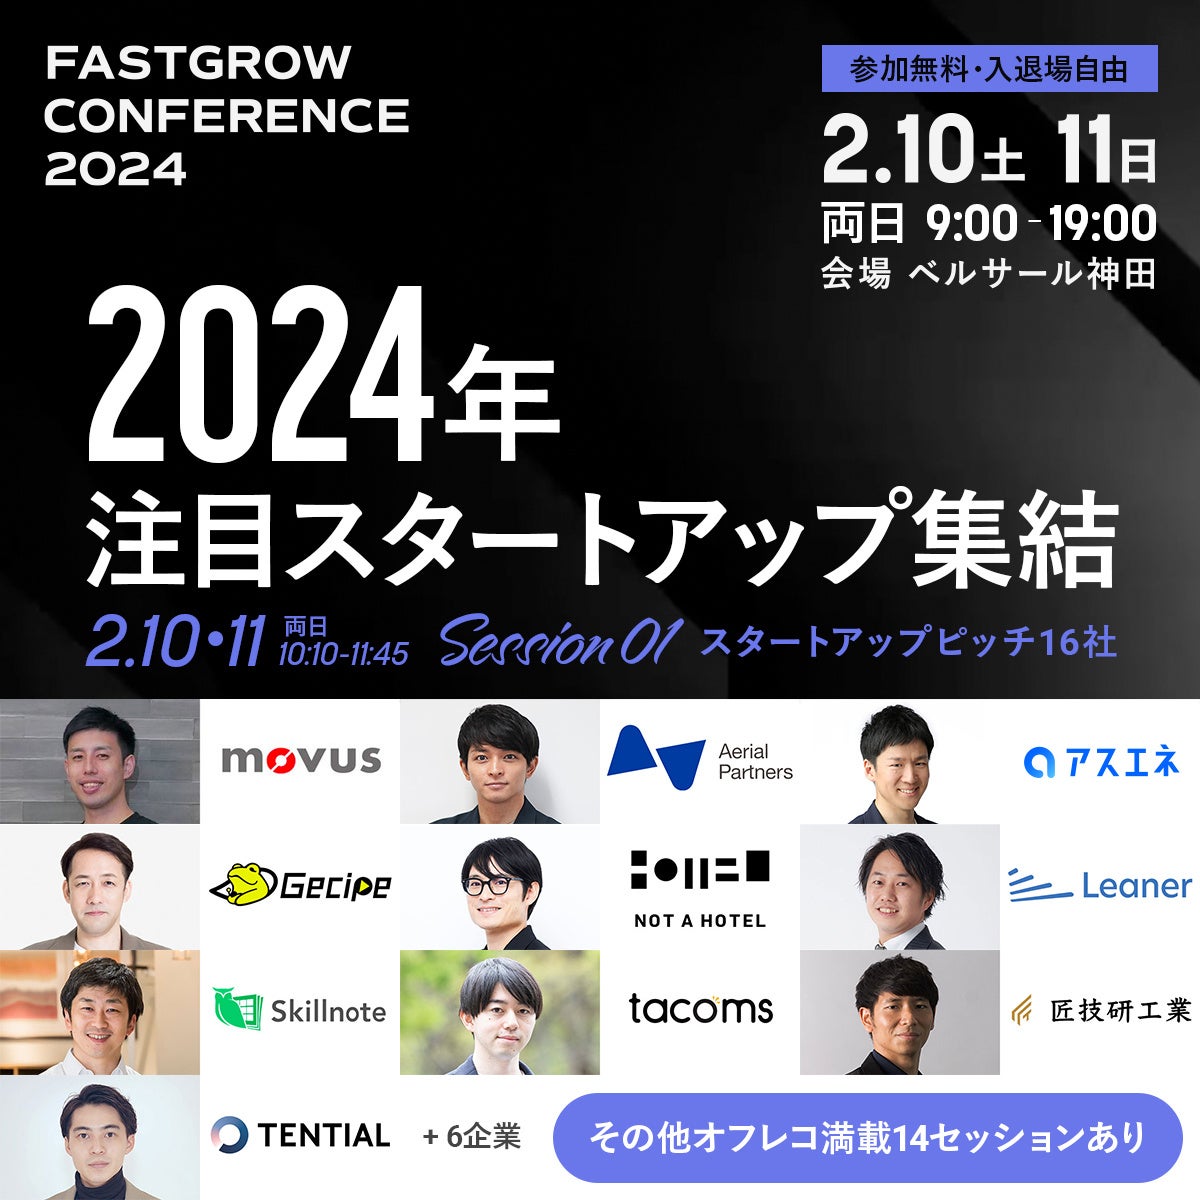 ゲシピ株式会社、挑戦し続ける起業・事業家のための「FastGrow Conference 2024」に代表真鍋の登壇が決定！